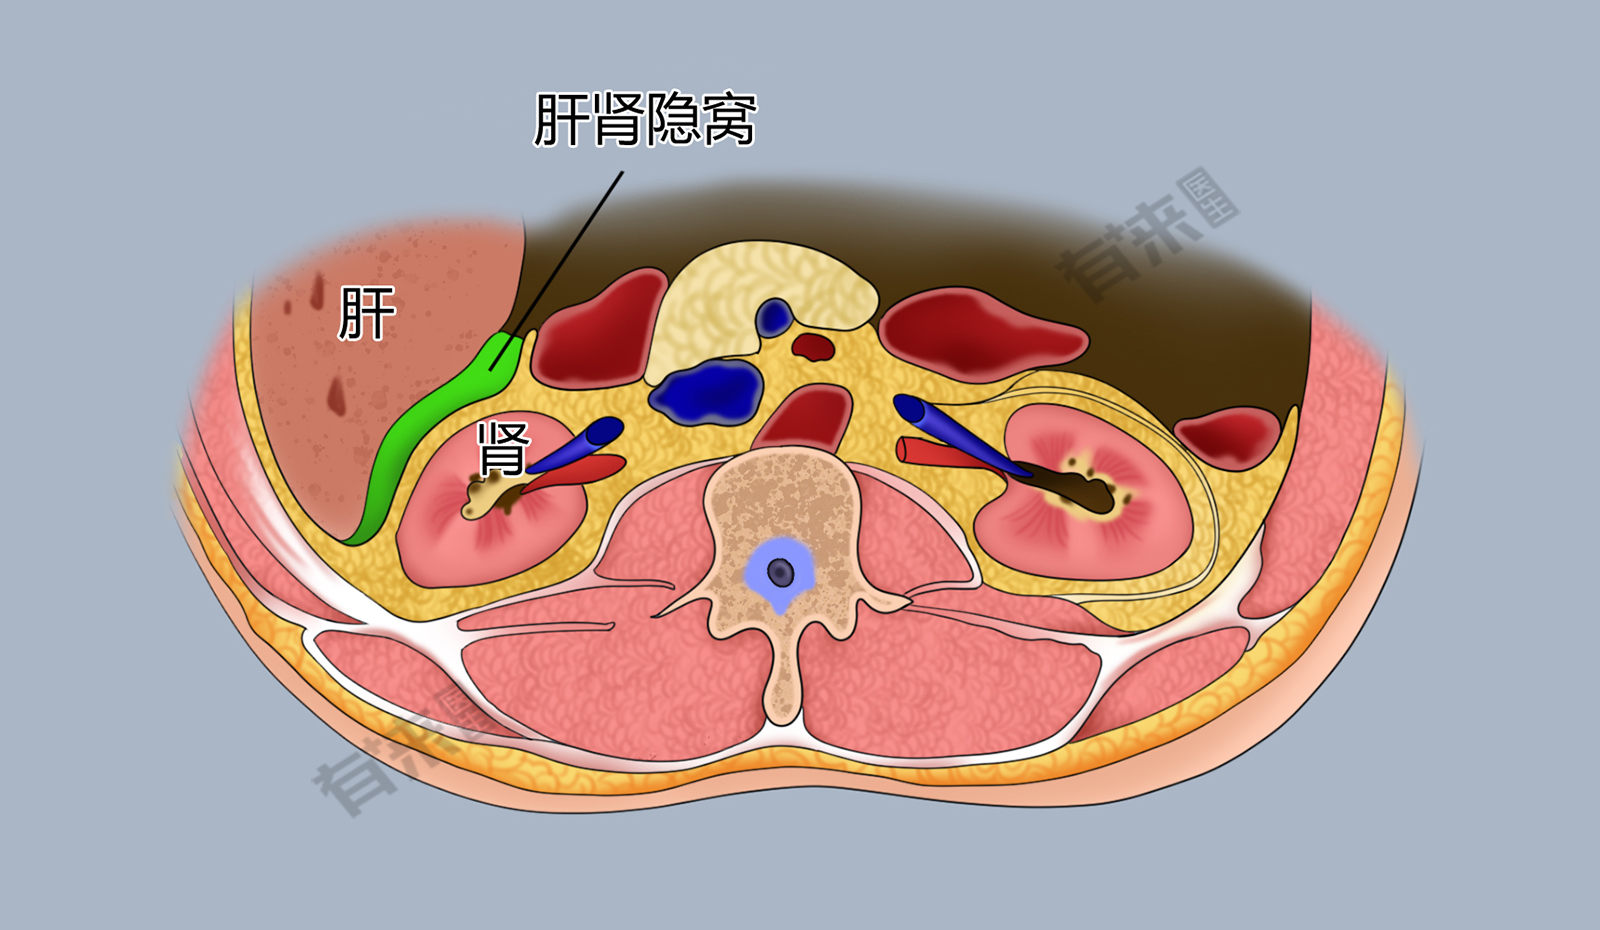 肝肾隐窝位于肝右叶下方深部与右肾之间,仰卧位时,是腹膜腔的最低部位